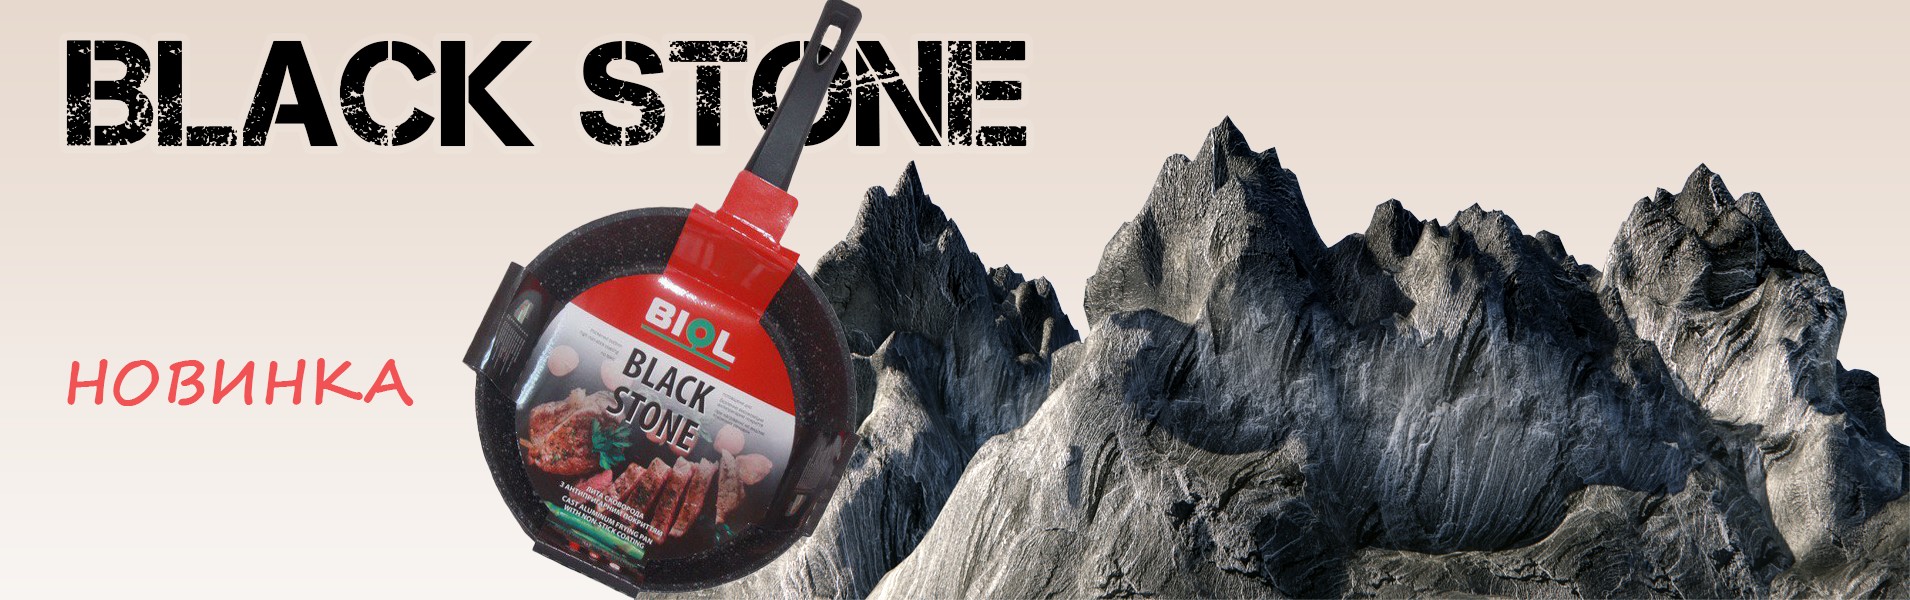 Новинка от TM BIOL - линия Black Stone